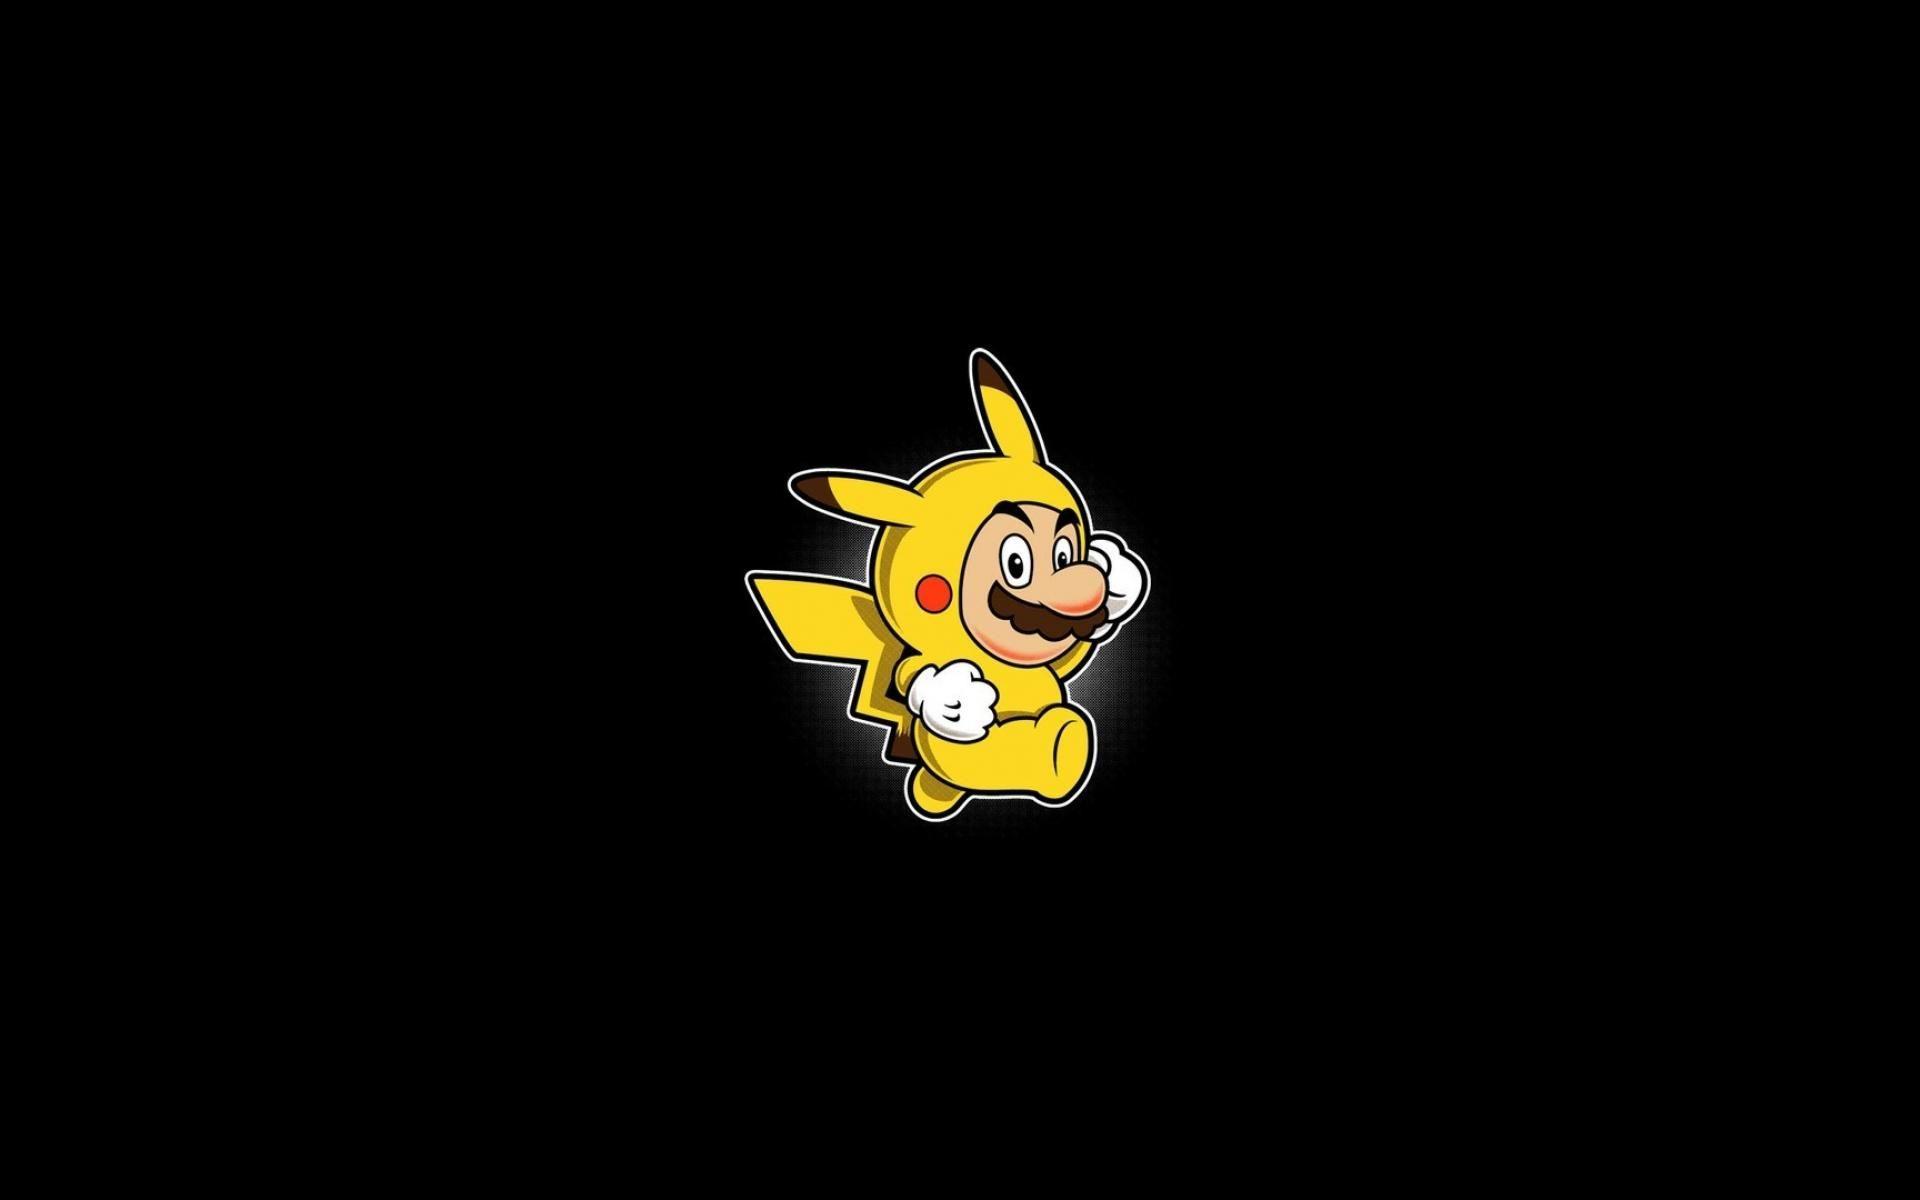 1920x1200 Mario pikachu pokemon trừu tượng hình nền nền đen